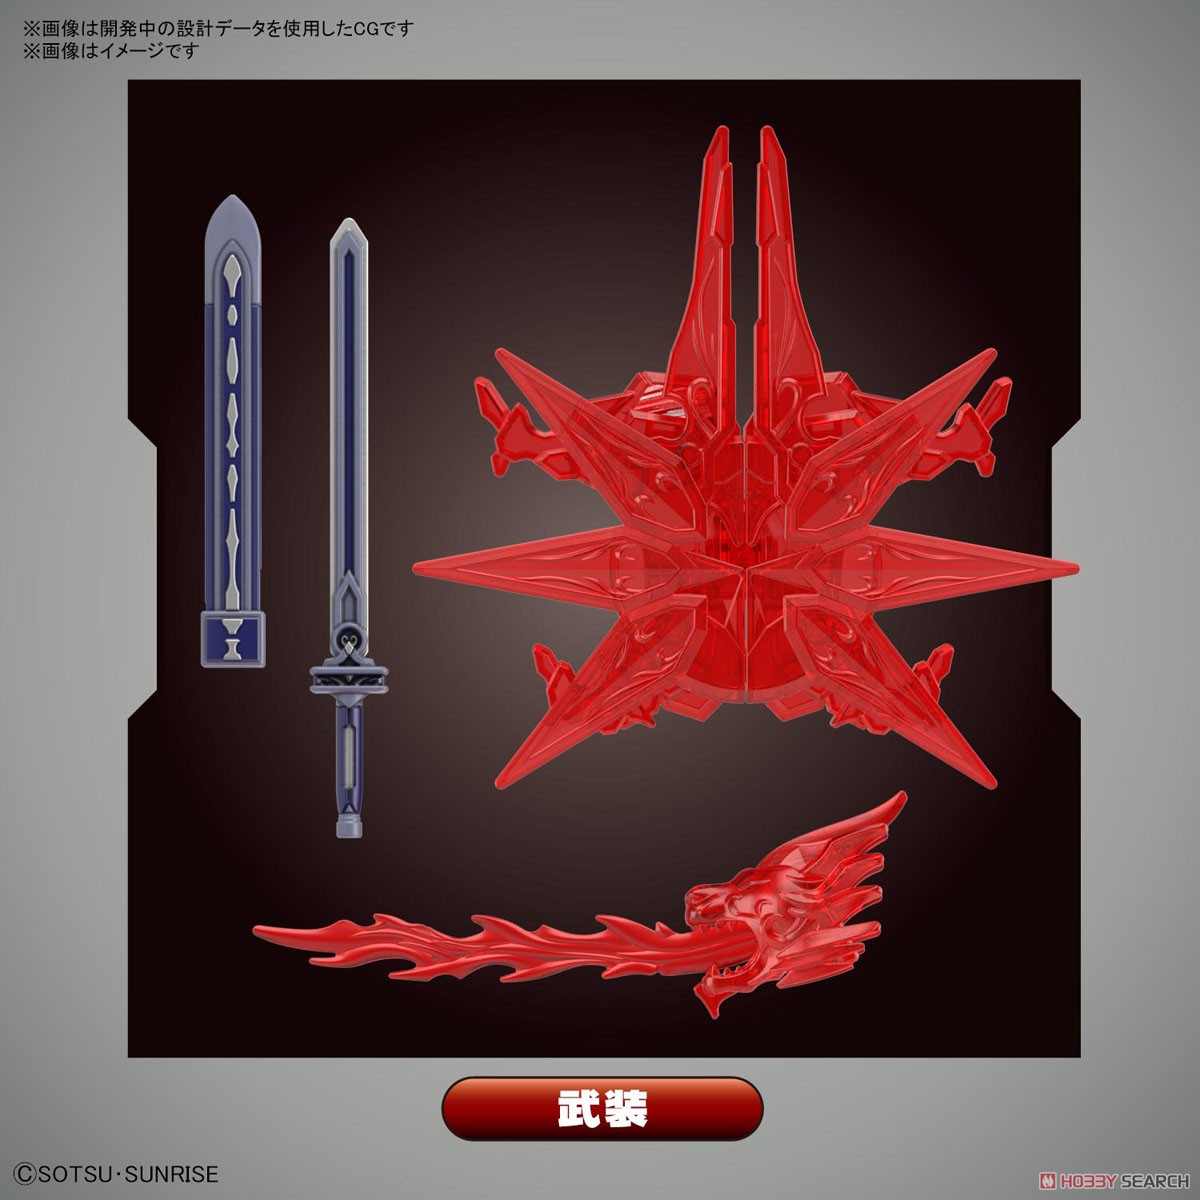 [PREORDER] SDW Heroes Ceasar Legend Gundam